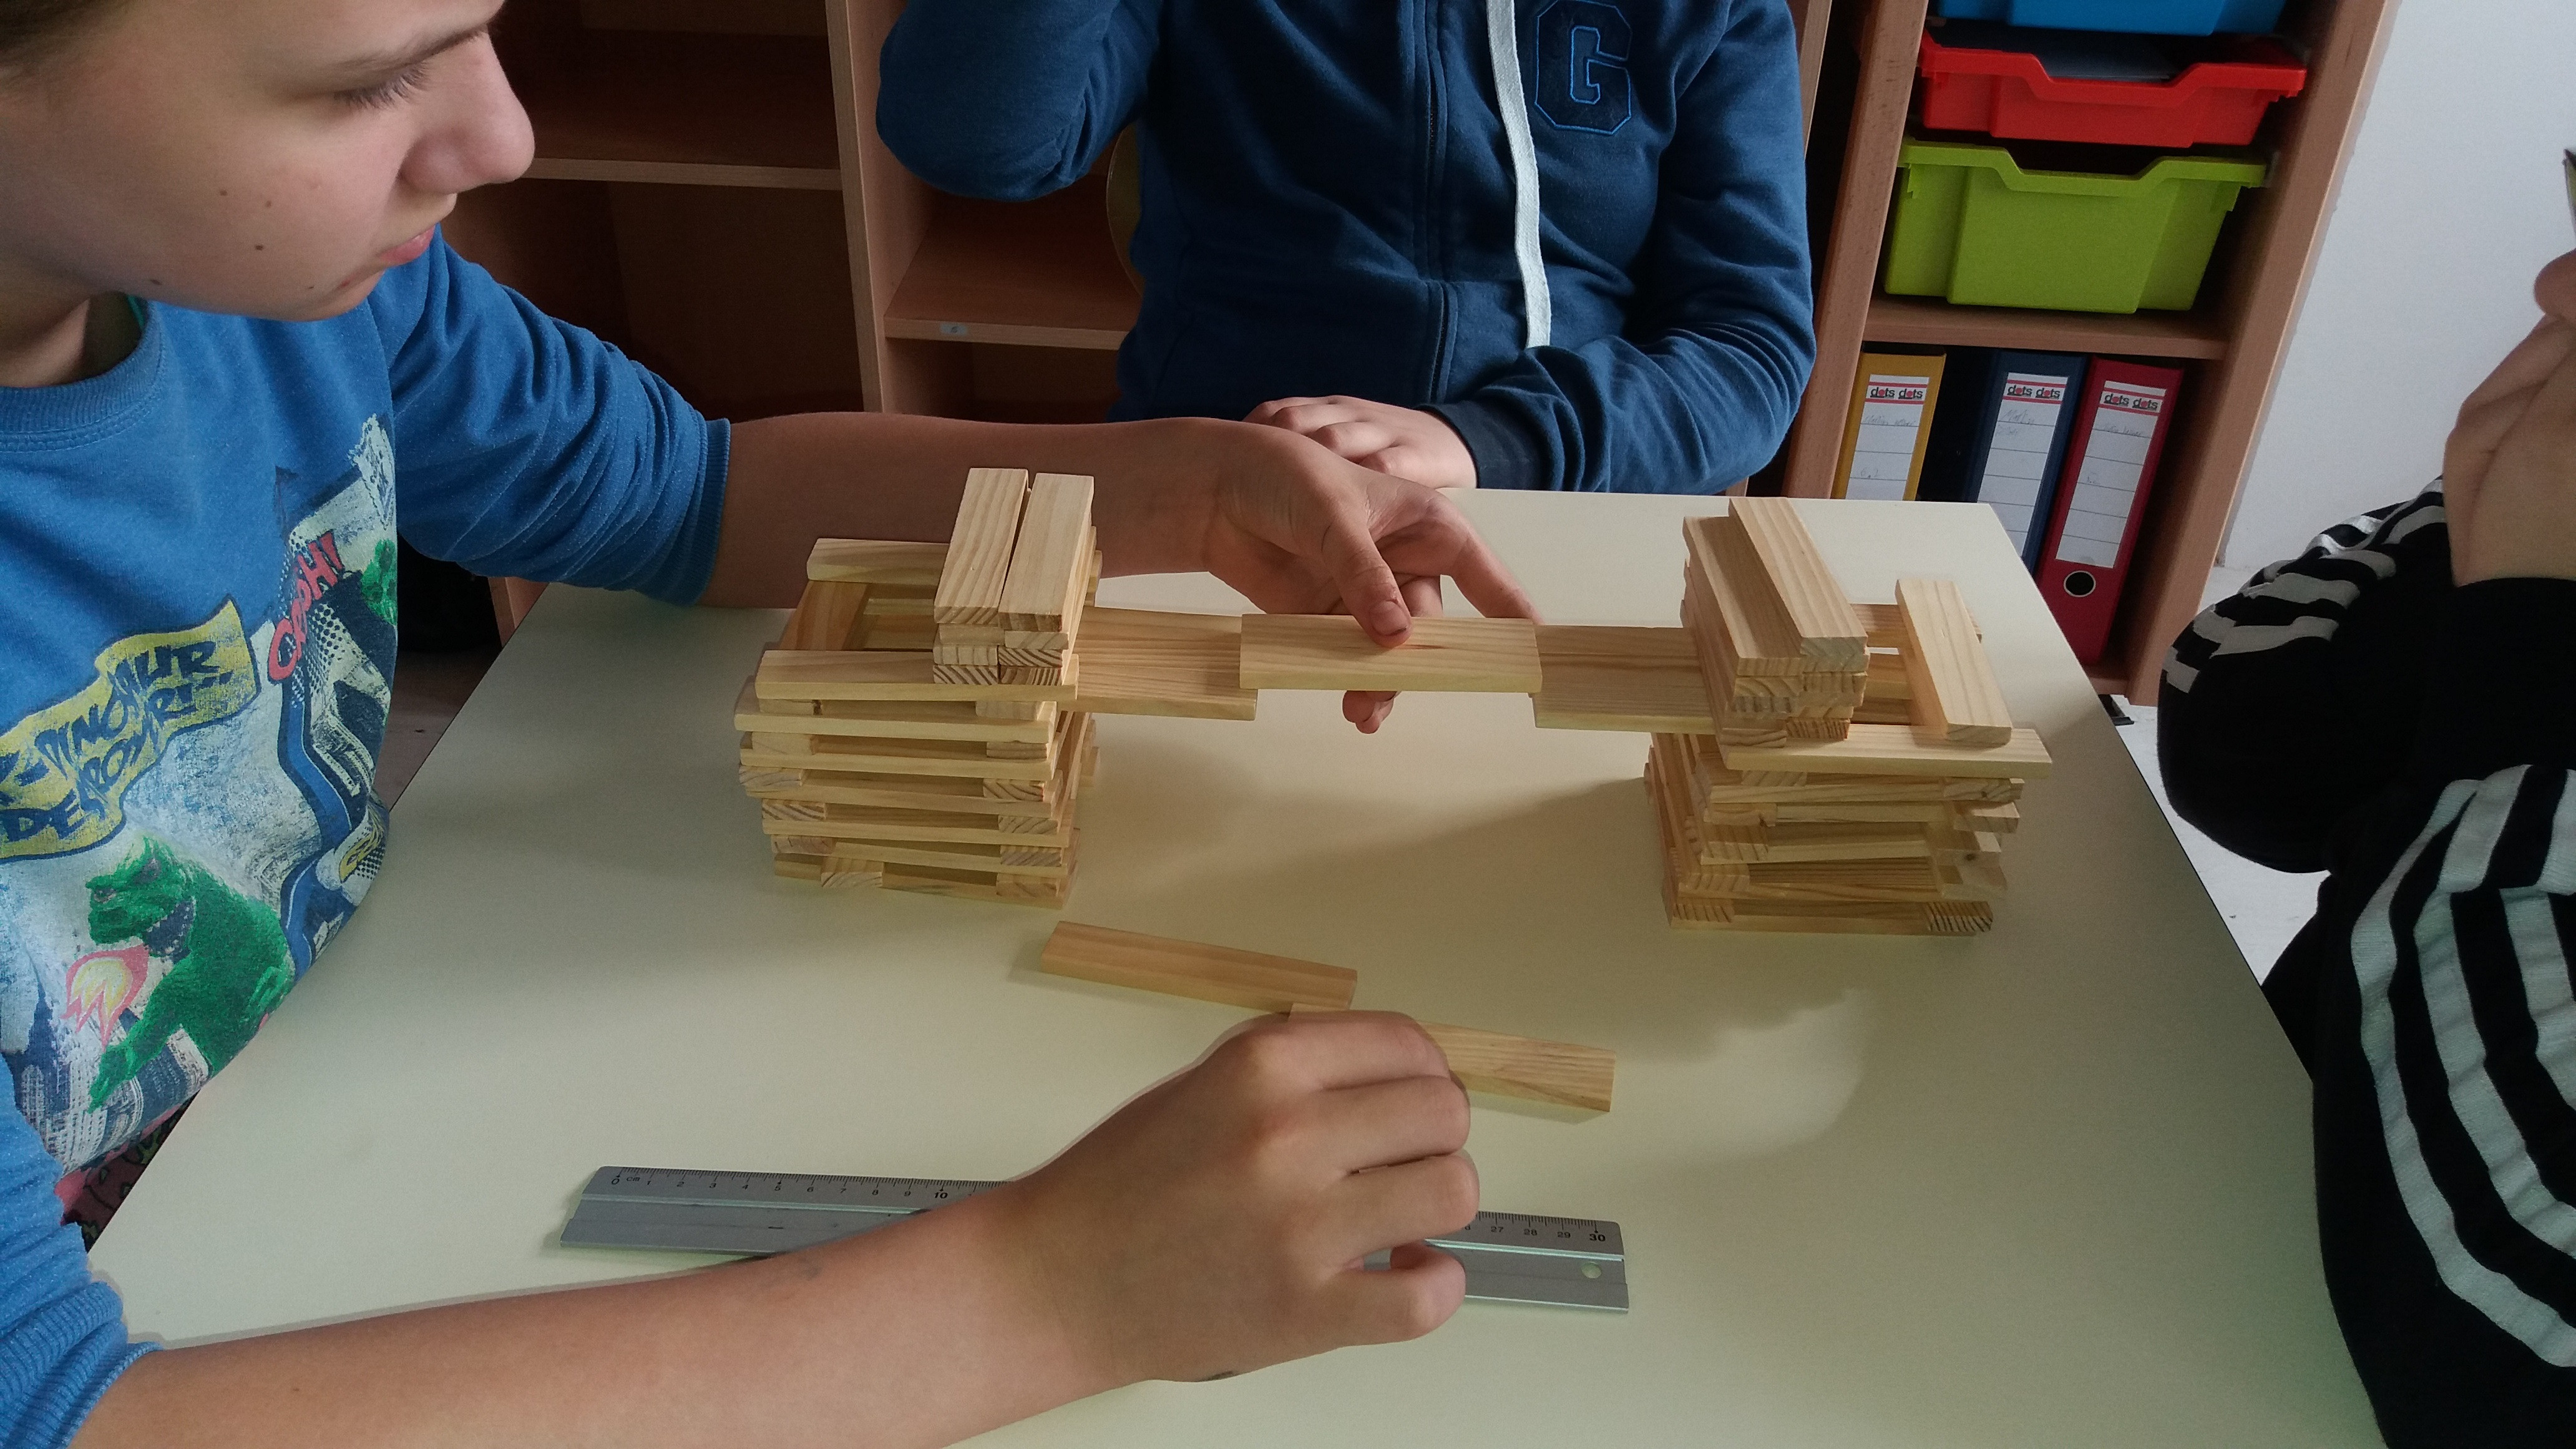  Der Versuch in der Gruppe eine tragfähige Brücke zu bauen 